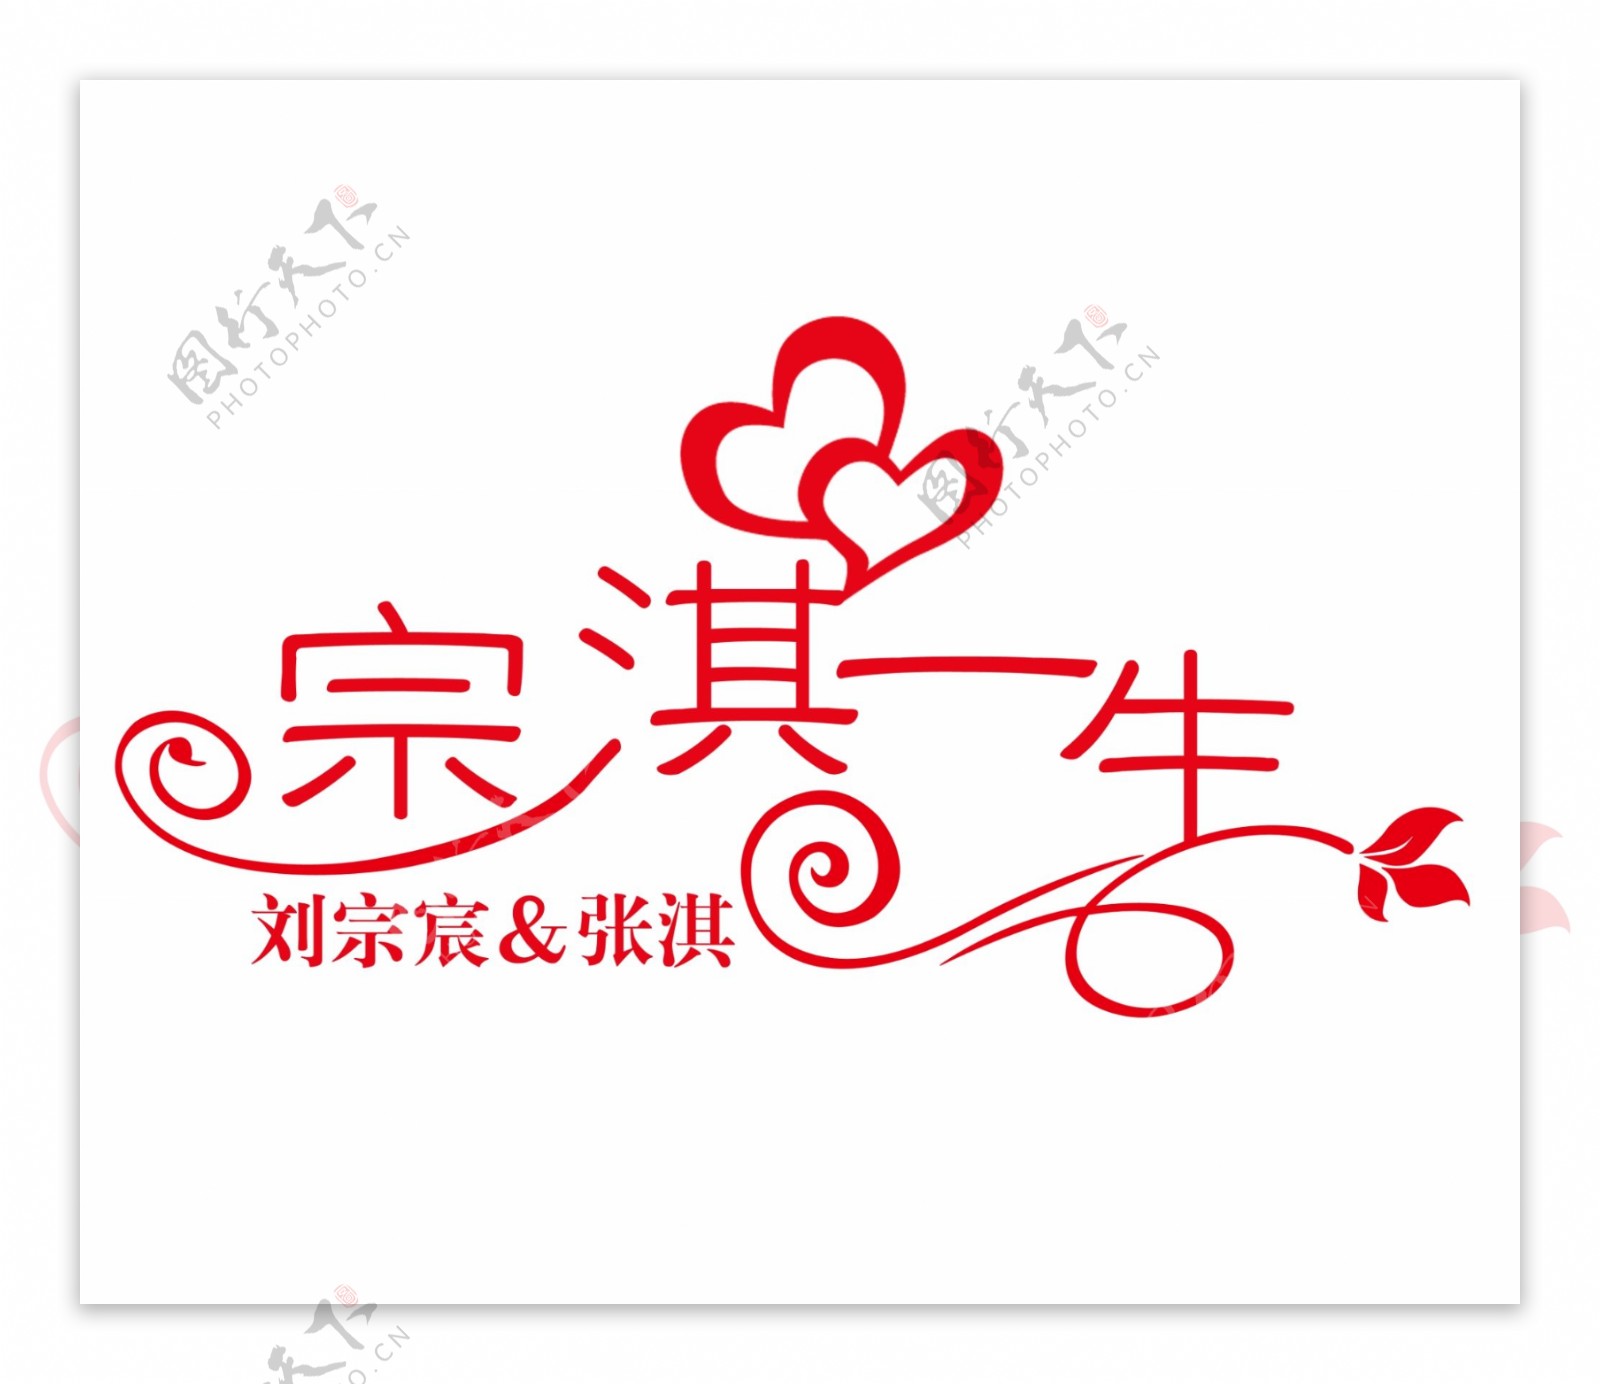 婚礼logo标识图片